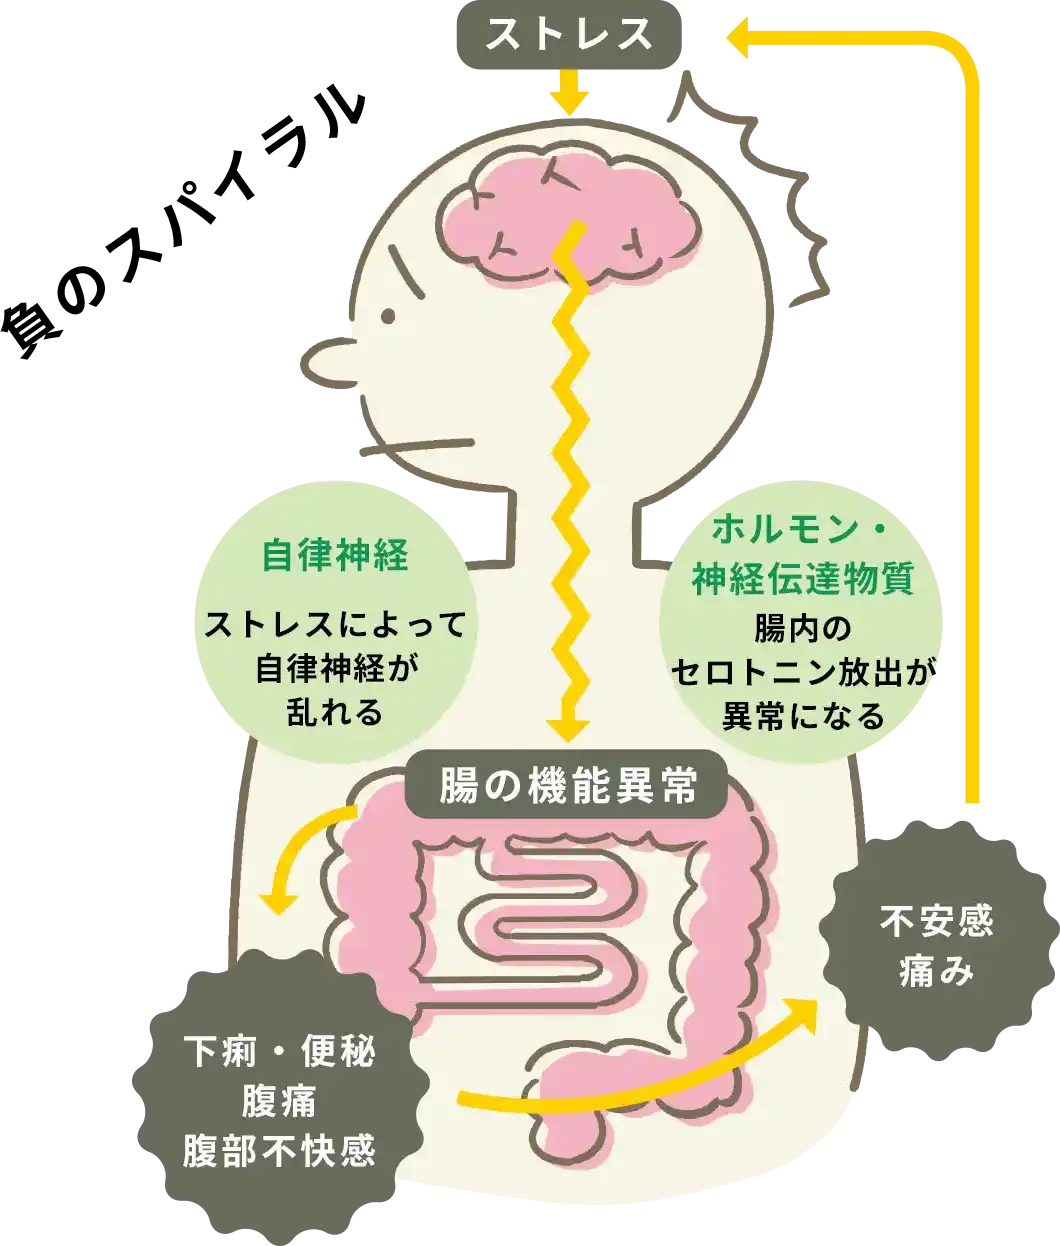 脳と腸が自律神経やホルモン、神経伝達物質などの働きを通じて密接に関連しているイラスト